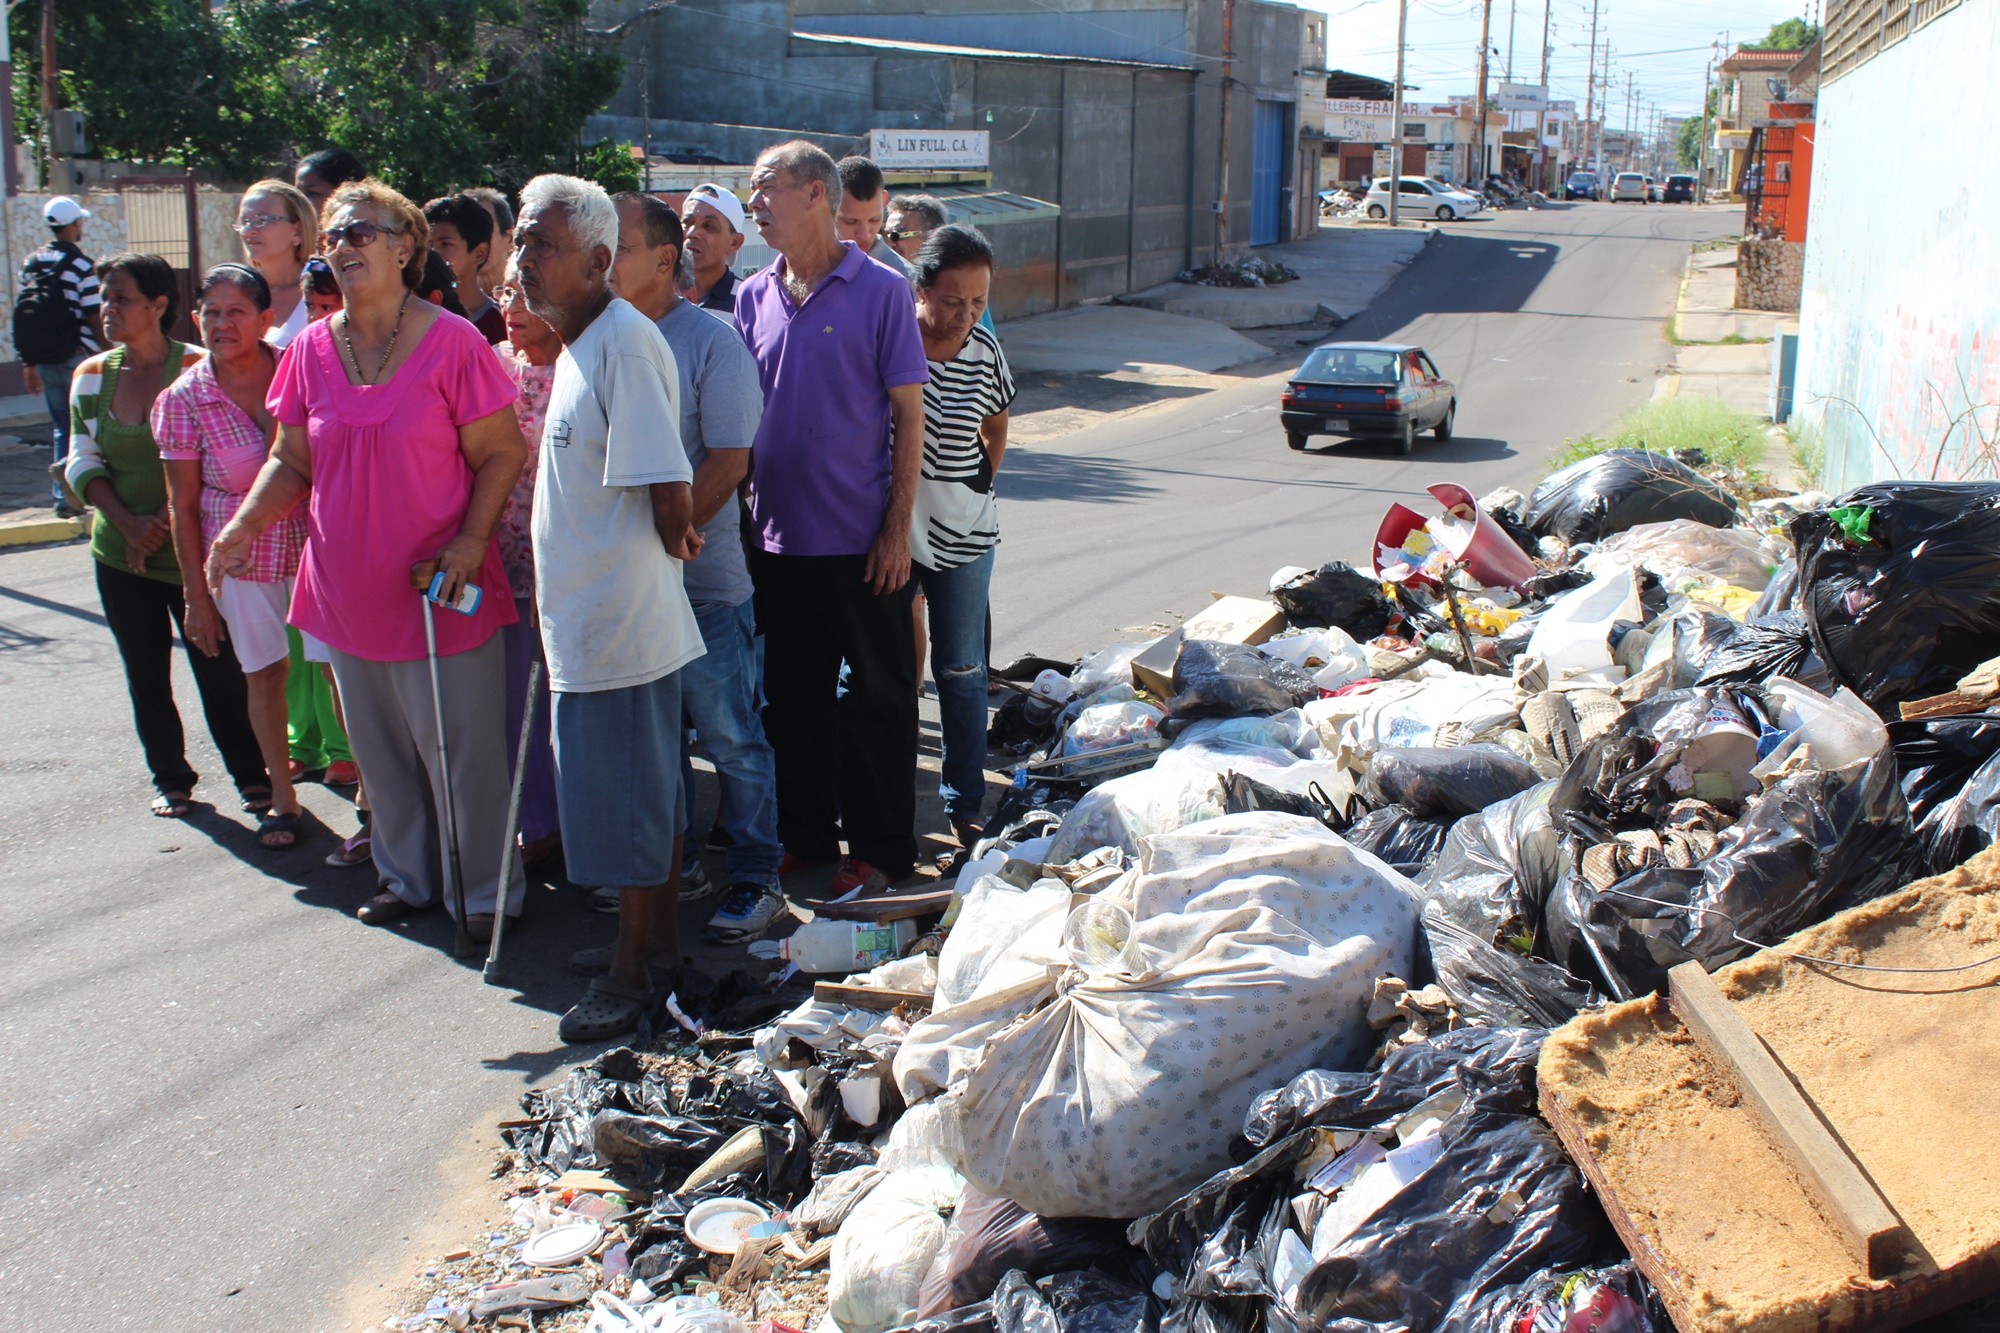 Montañas de basura tienen alarmados a los vecinos de la parroquia Chiquinquirá en Zulia (Fotos)